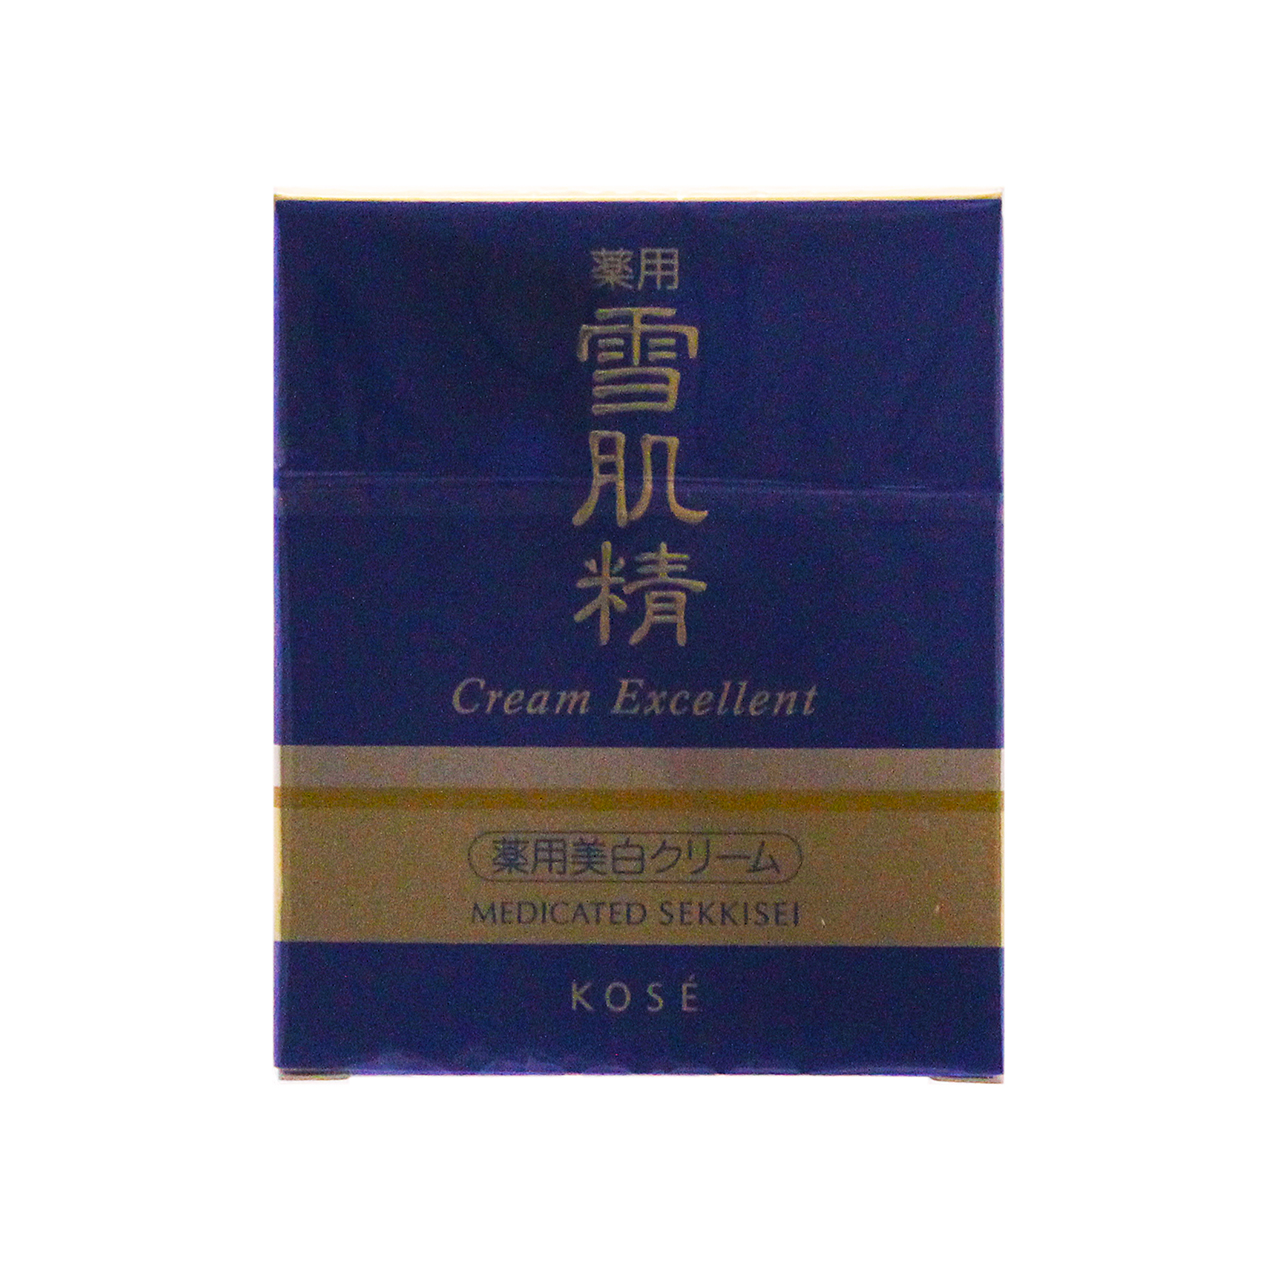 【新品】KOSE コーセー 薬用雪肌精 クリームエクセレント